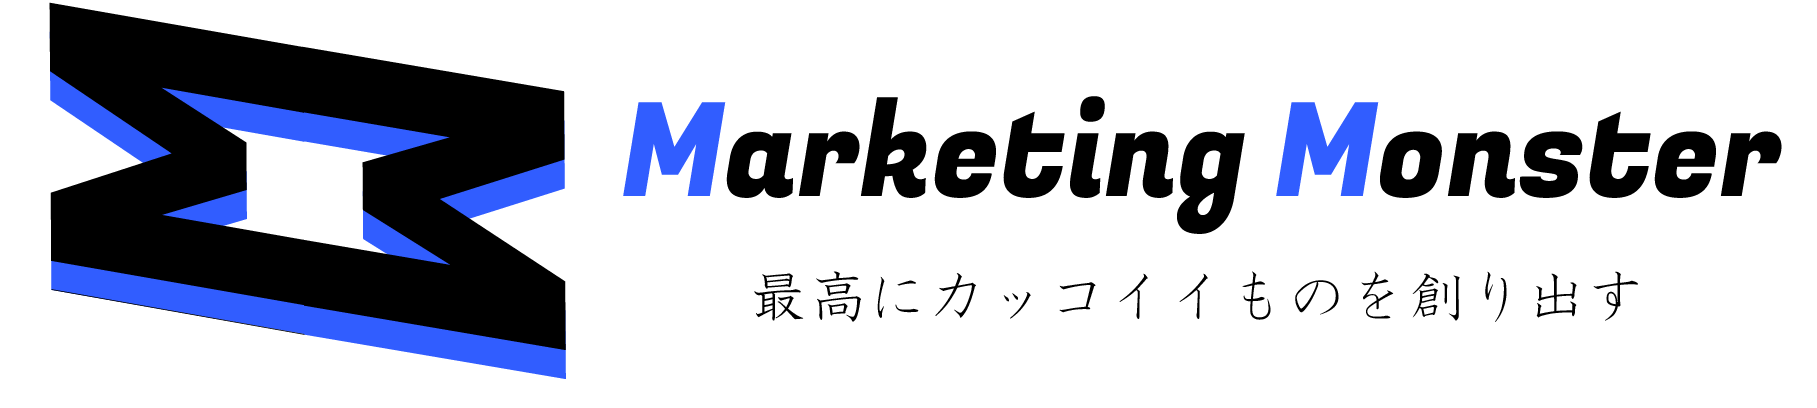 マーケティングモンスター-SNS・マーケティング専門メディア